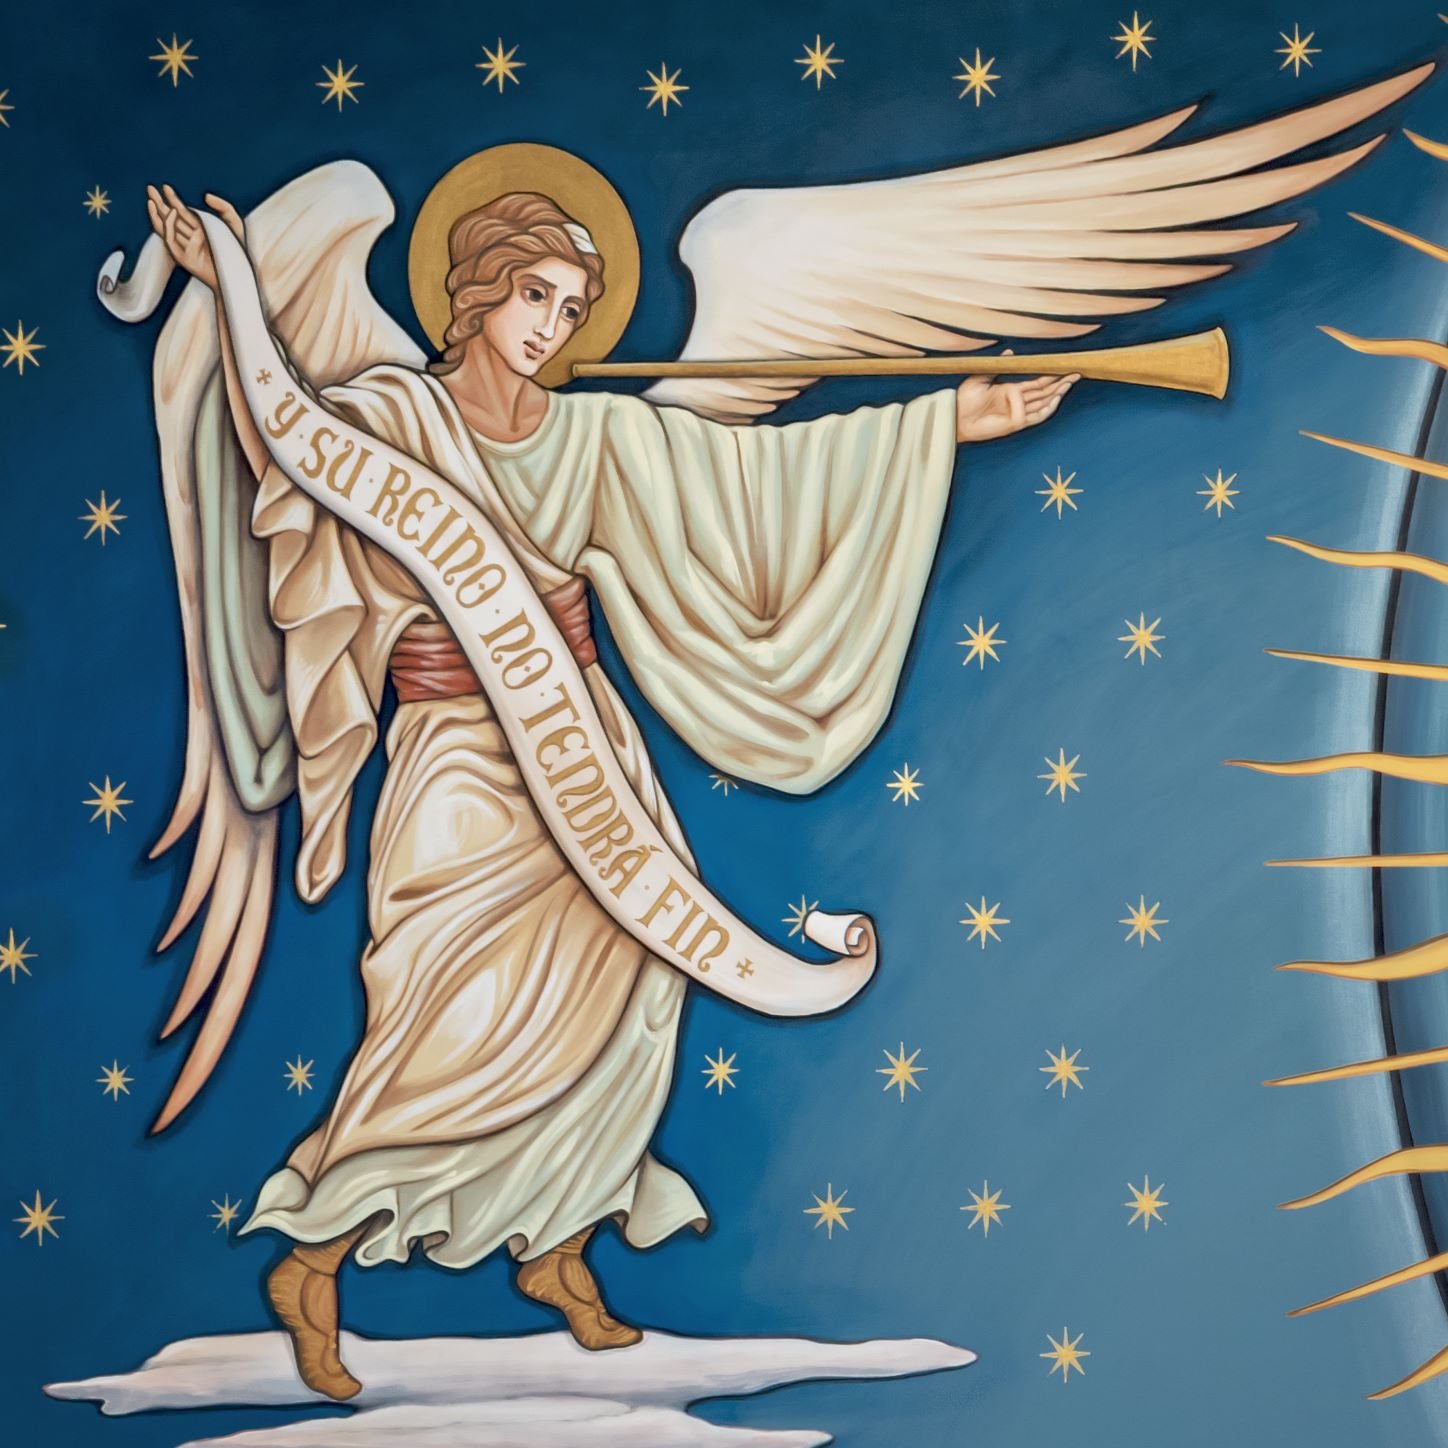 L’Archange Gabriel : Le Messager Divin de l’Inspiration et de la Guidance